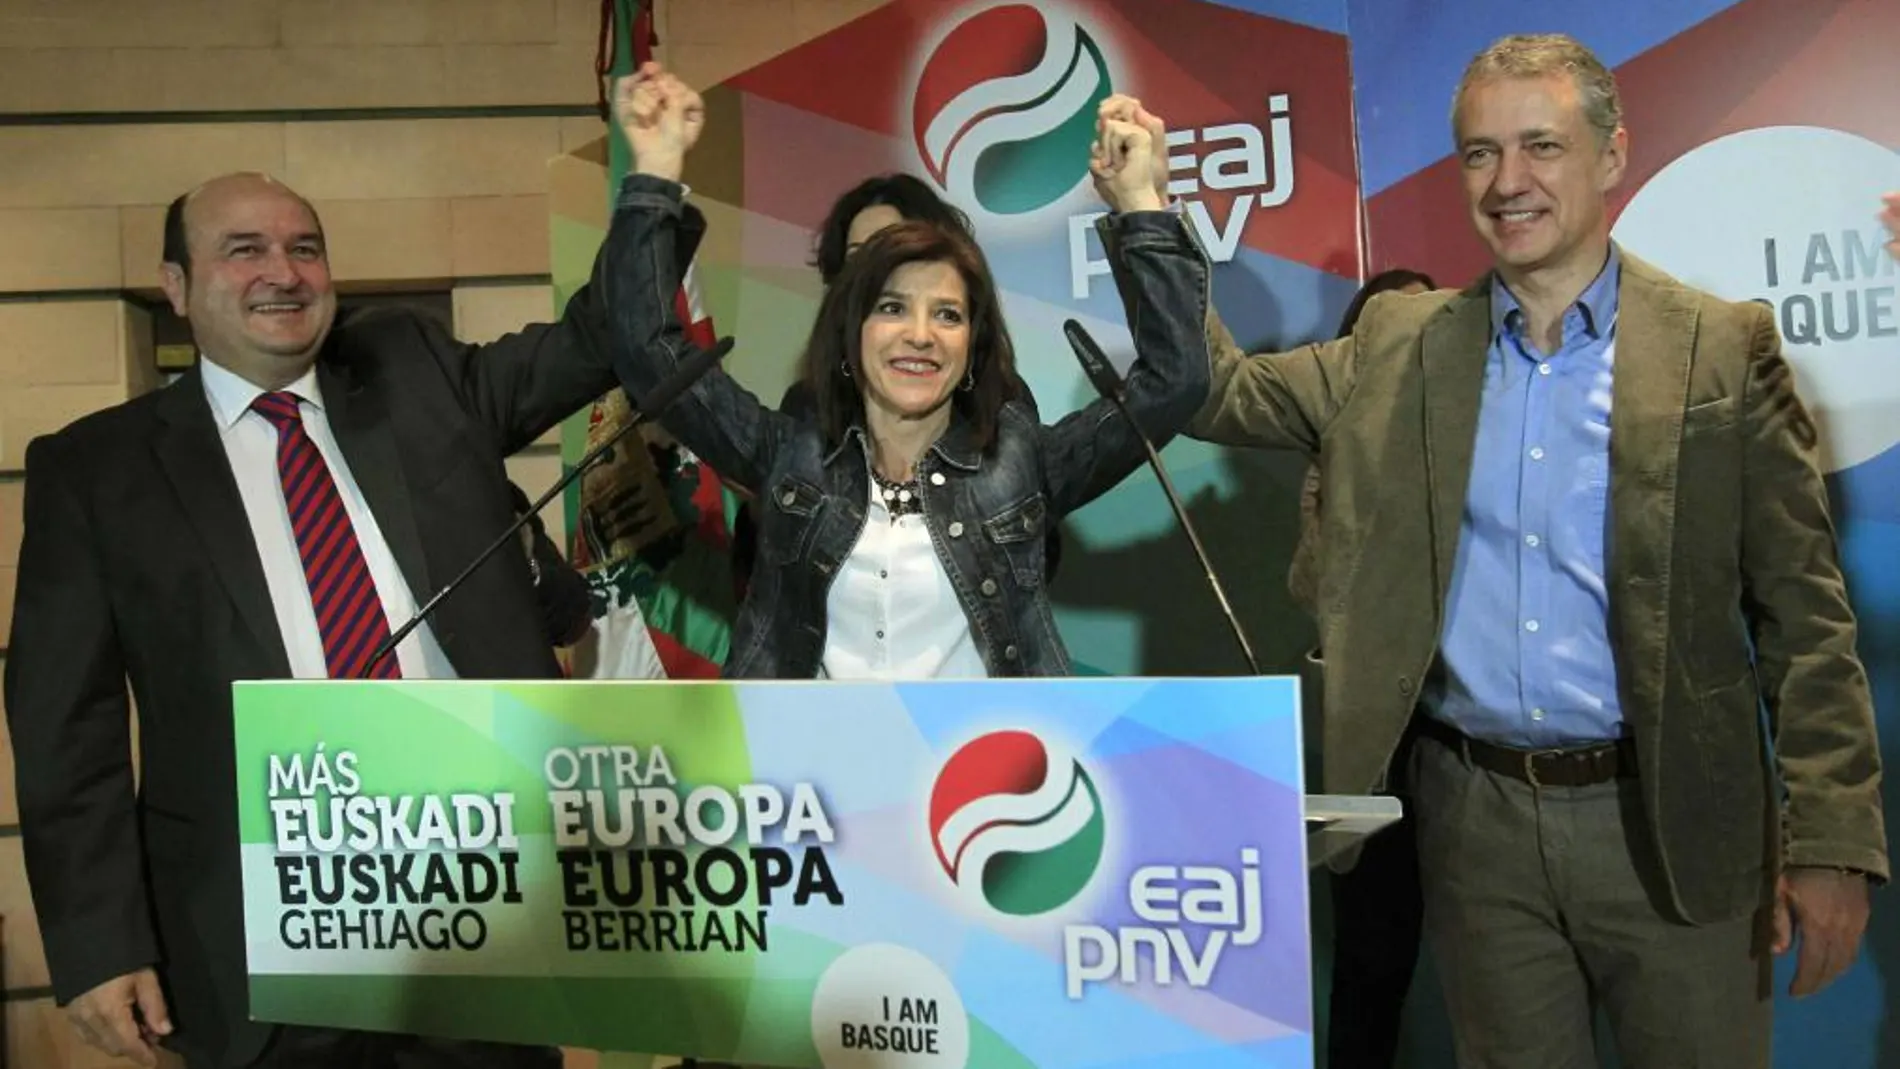 La cabeza de lista del PNV al Parlamento europeo y candidata electa Izaskun Bilbao(c), junto al lehendakari, Iñigo Urkullu, y al presidente del PNV, Andoni Ortuzar, durante la rueda de prensa en la sede del PNV en Bilbao.